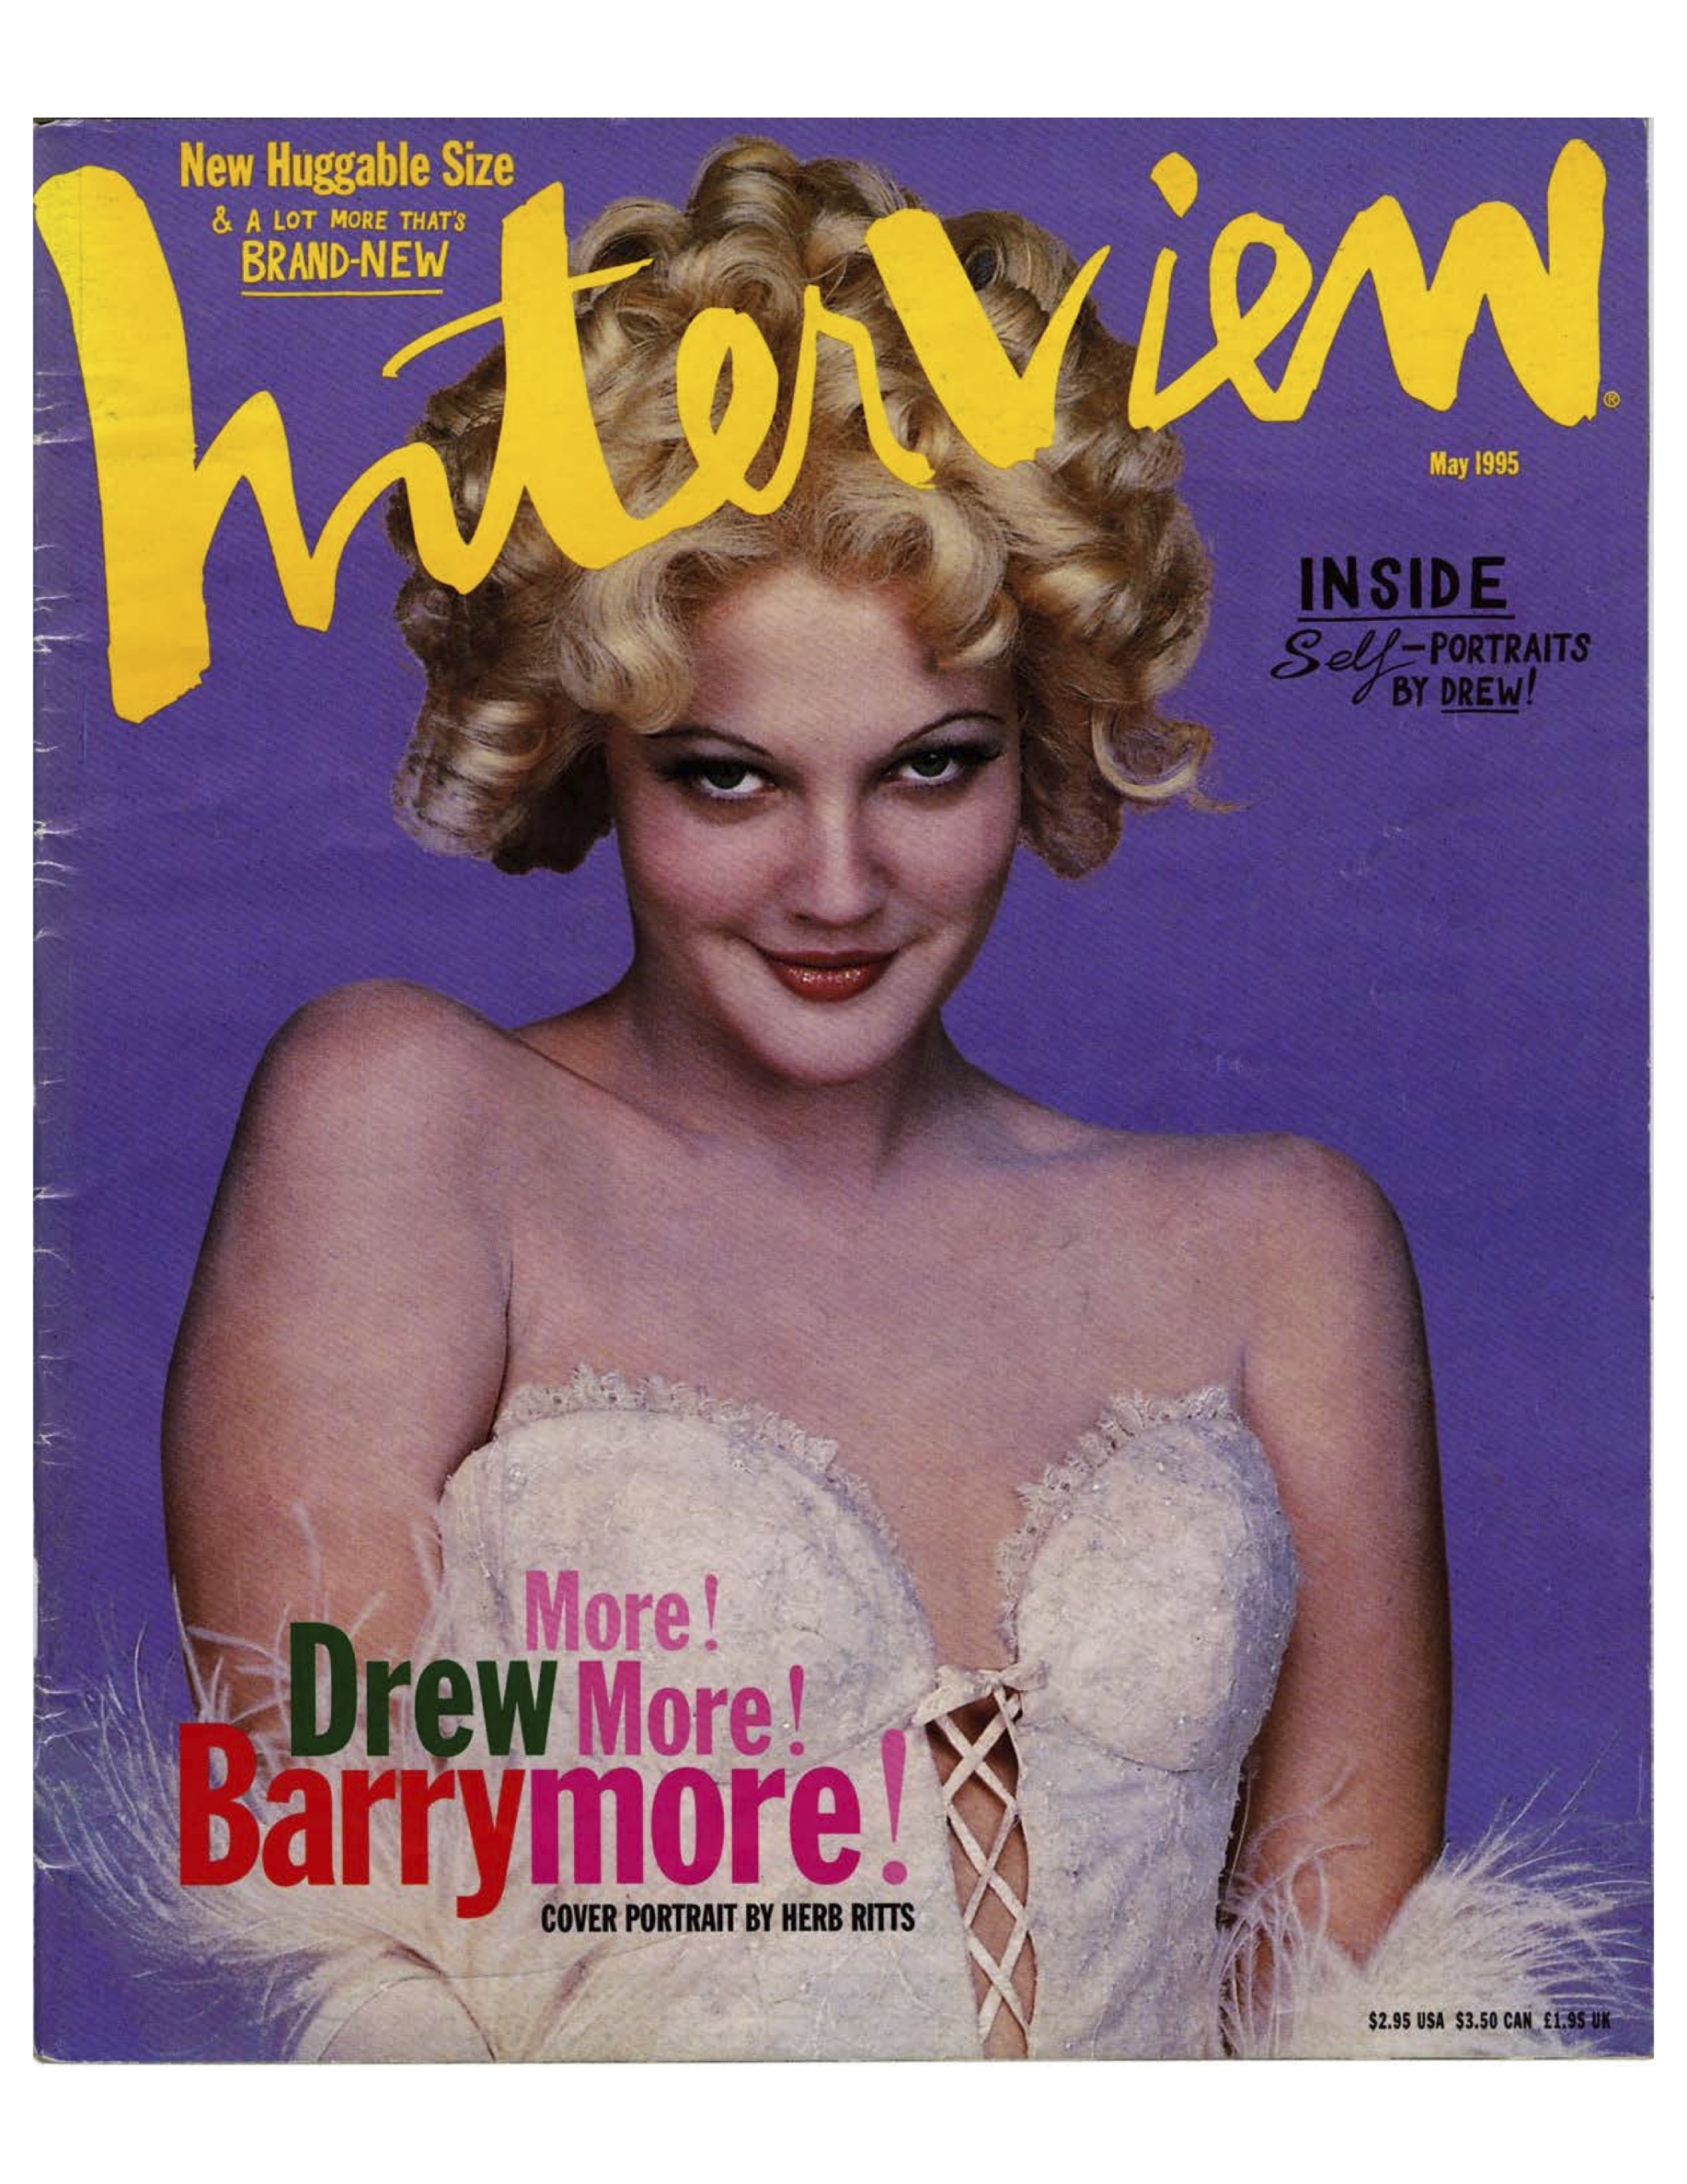 Drew barrymore interview magazine 1992